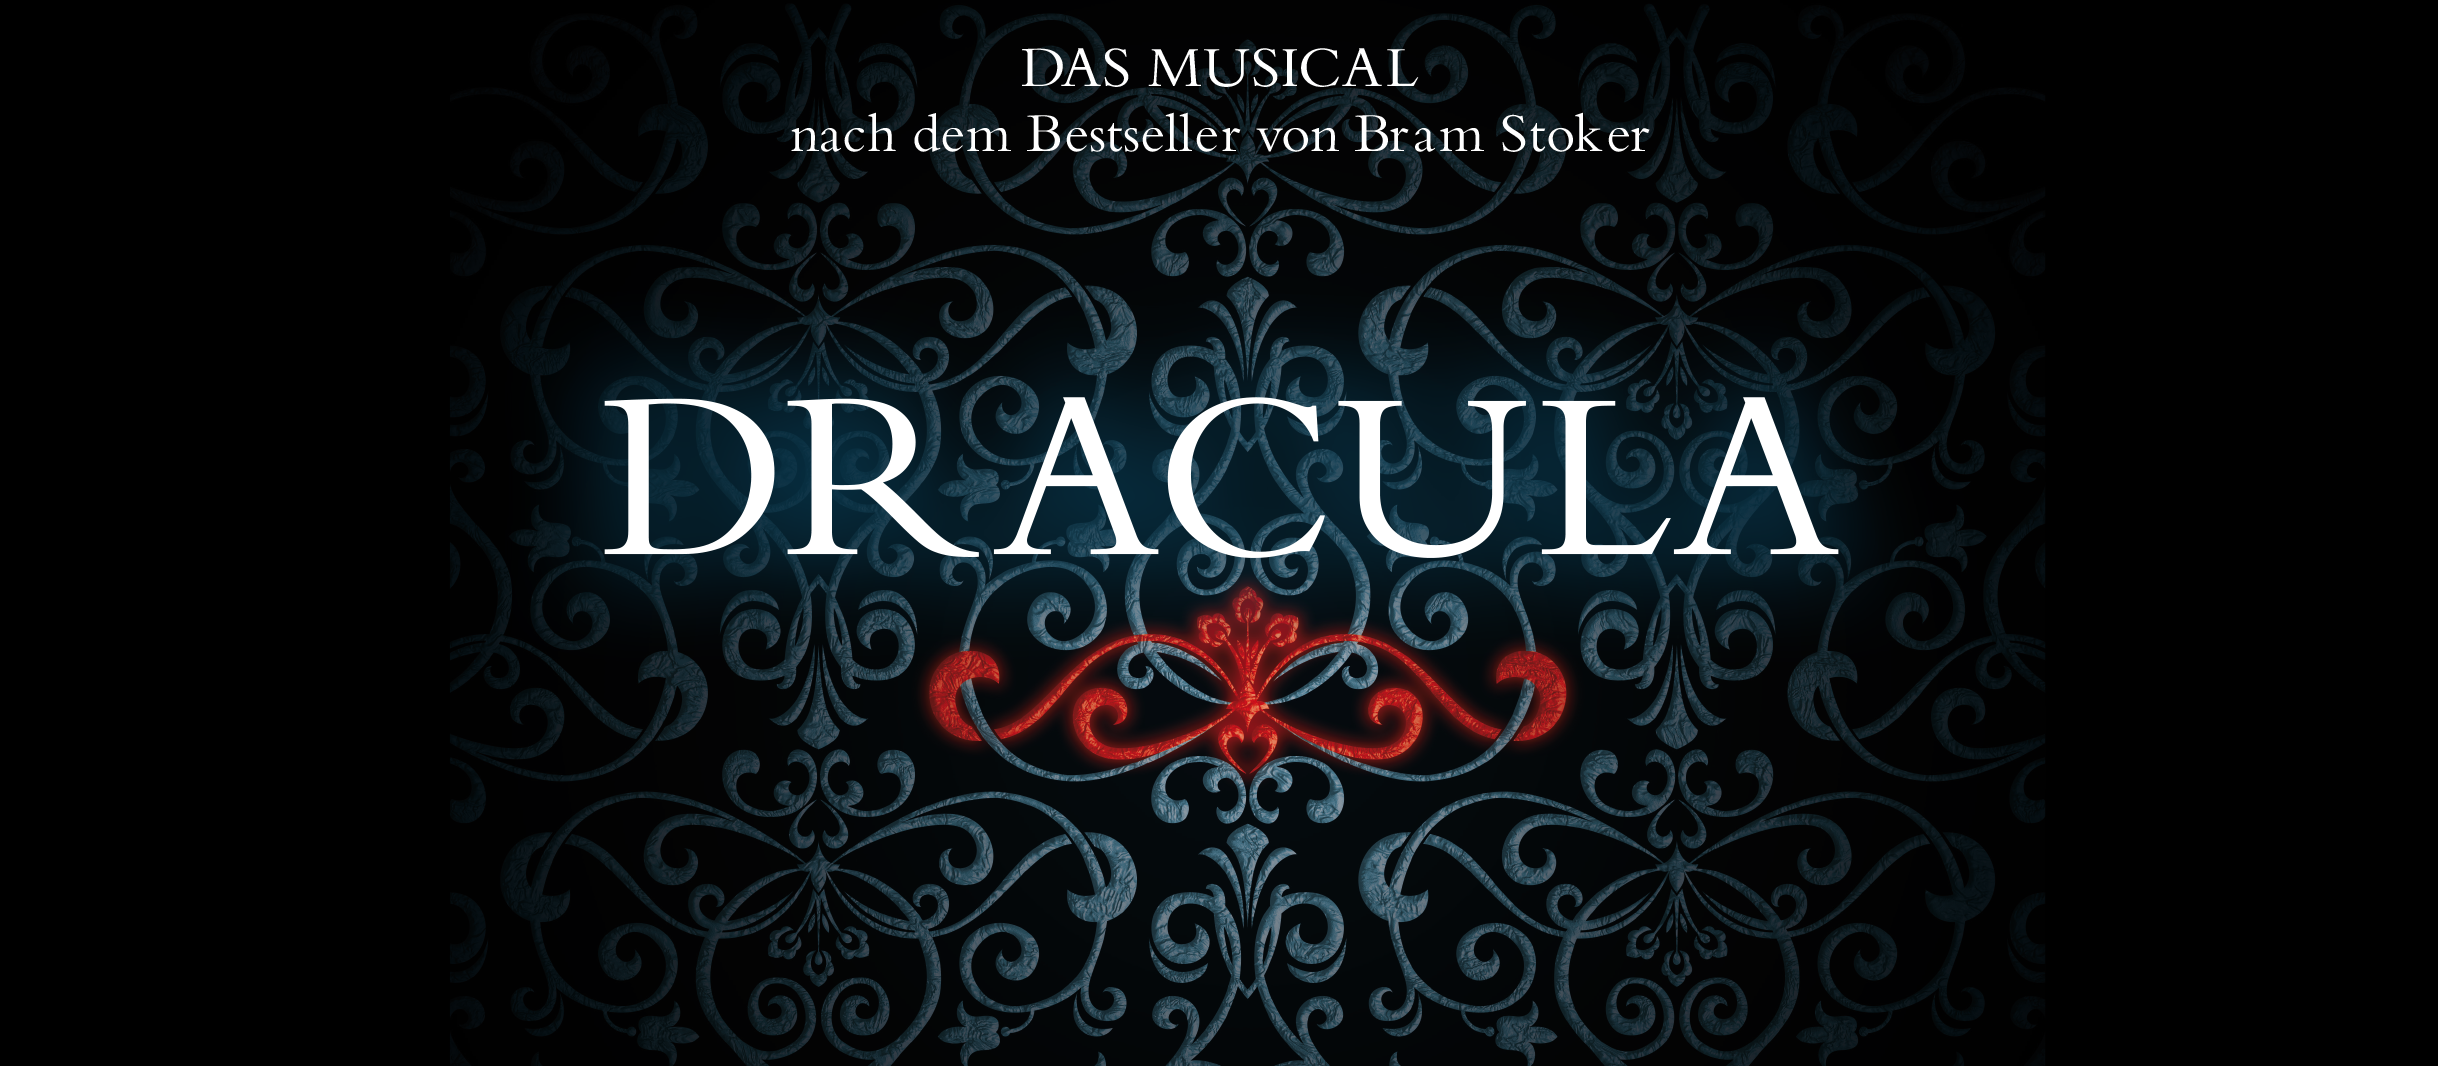 Plakat zum Musical Dracula in München: Silberner Schriftzug auf schwarzem Grund mit edlen Verzierungen, die an Vampire erinnern